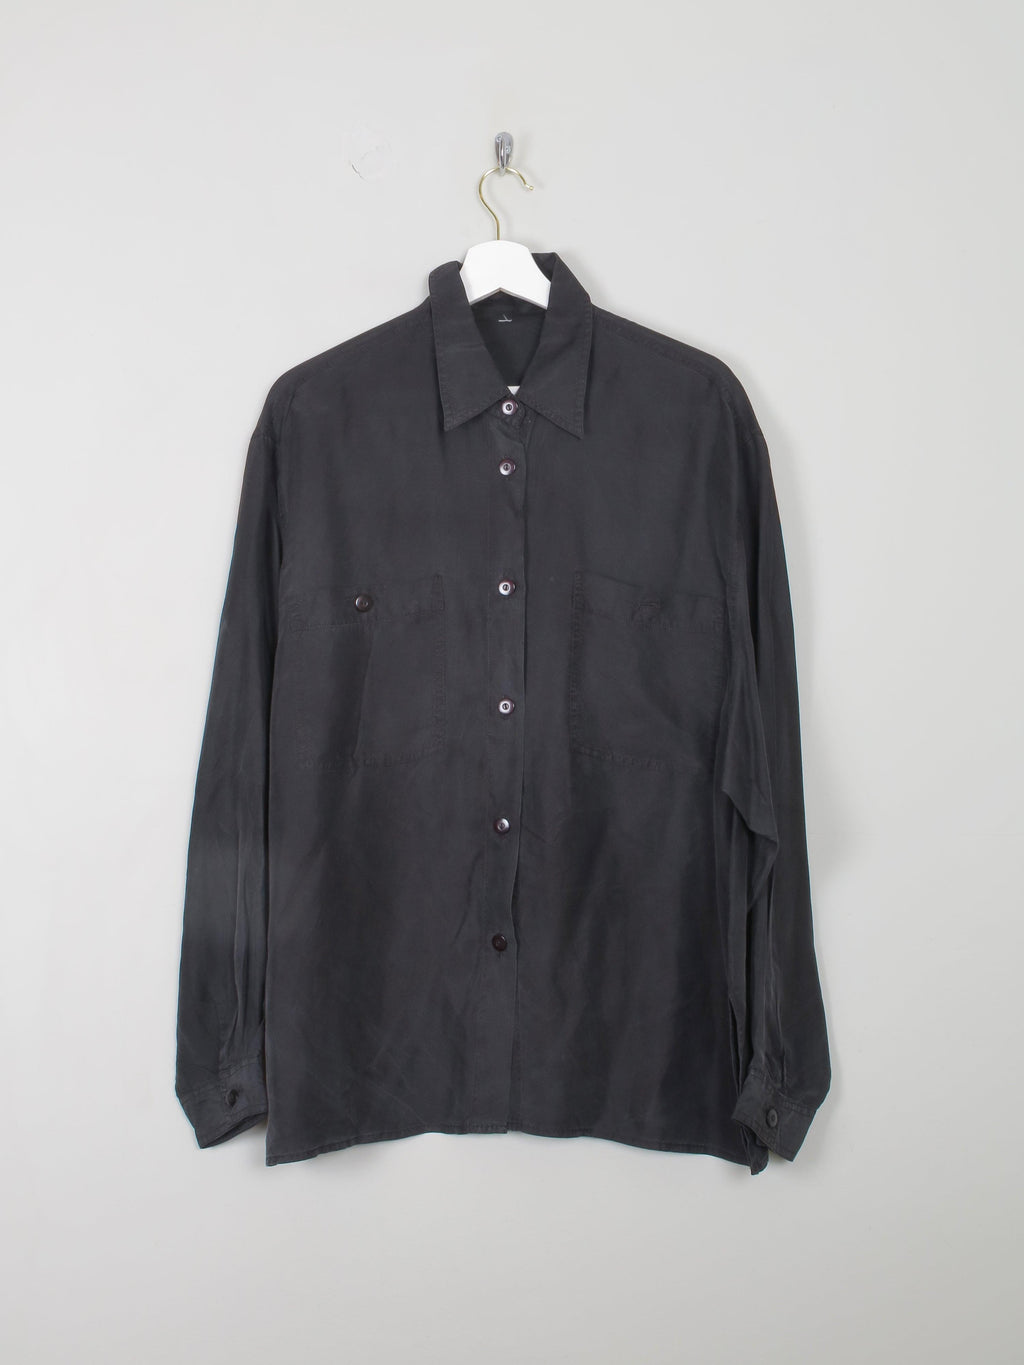 Men's Black Vintage Silk Shirt M/L - The Harlequin